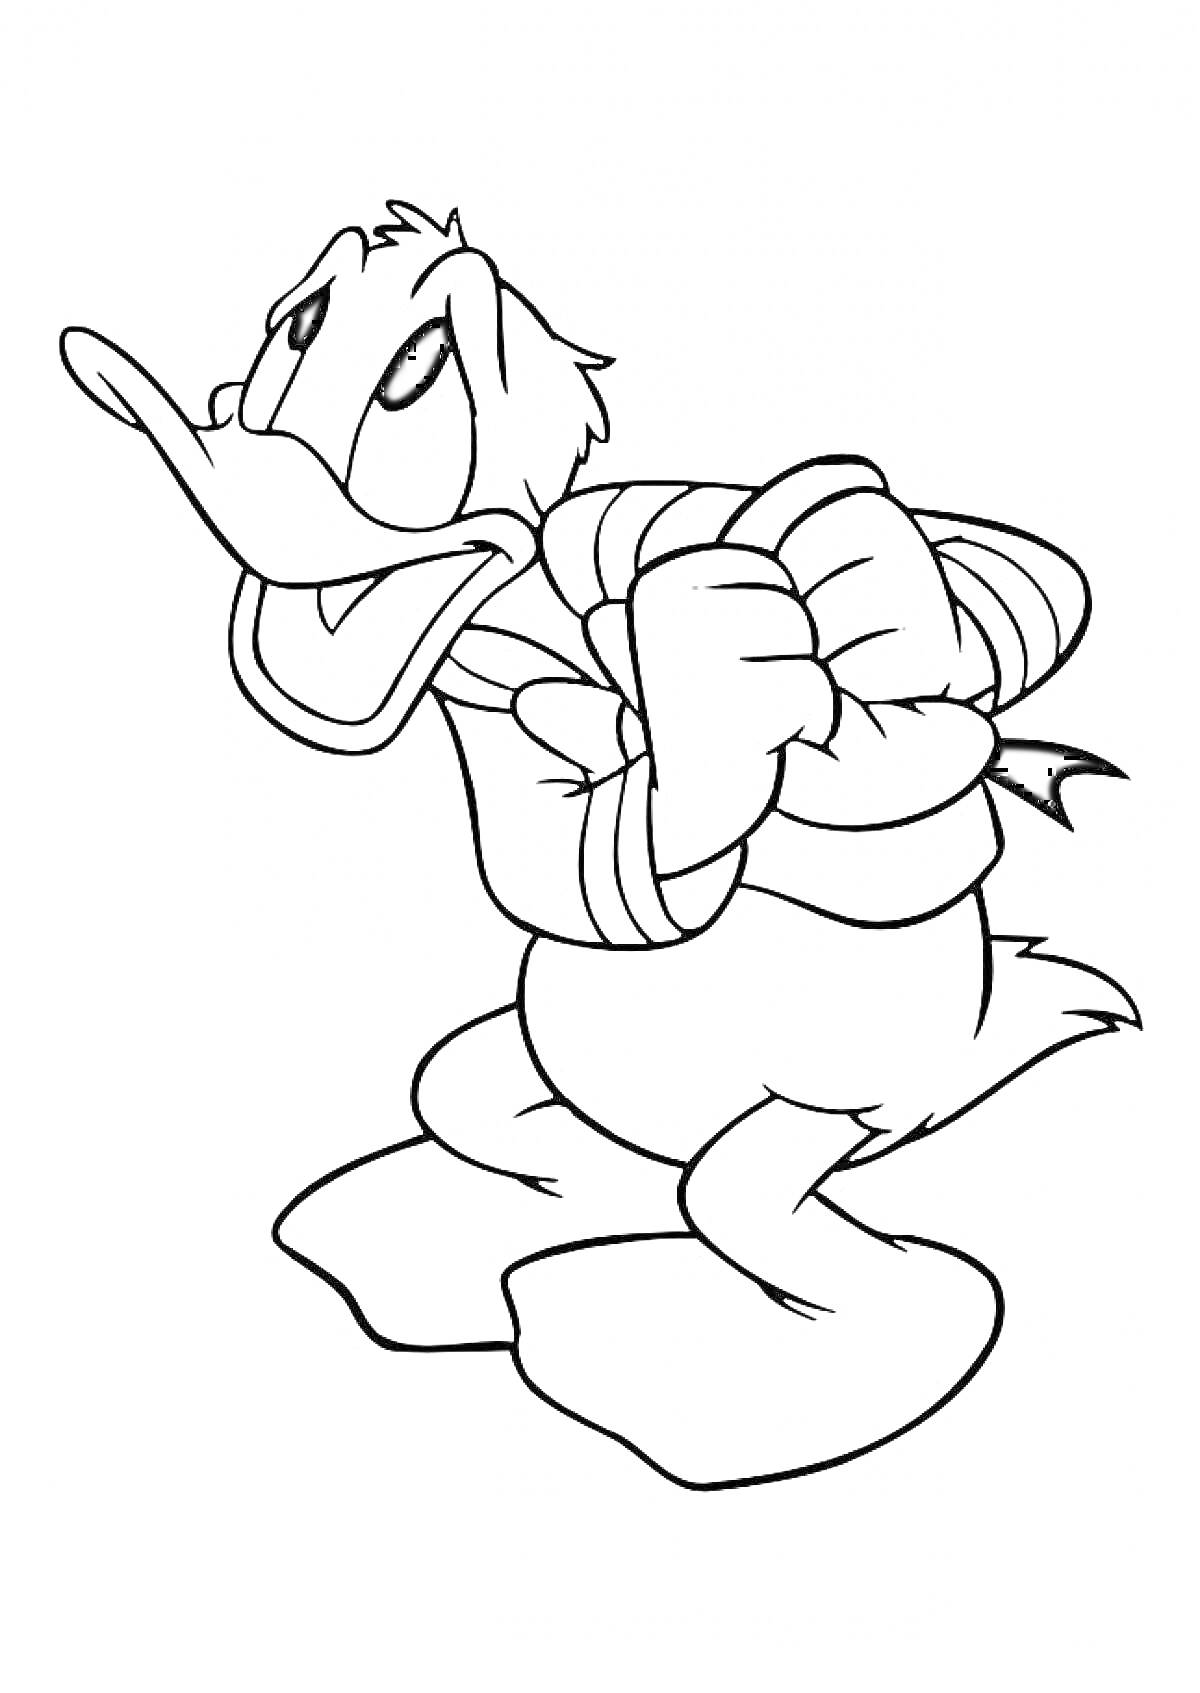 Раскраска Дональд Дак в морской тельняшке с поднятыми в гневном жесте руками